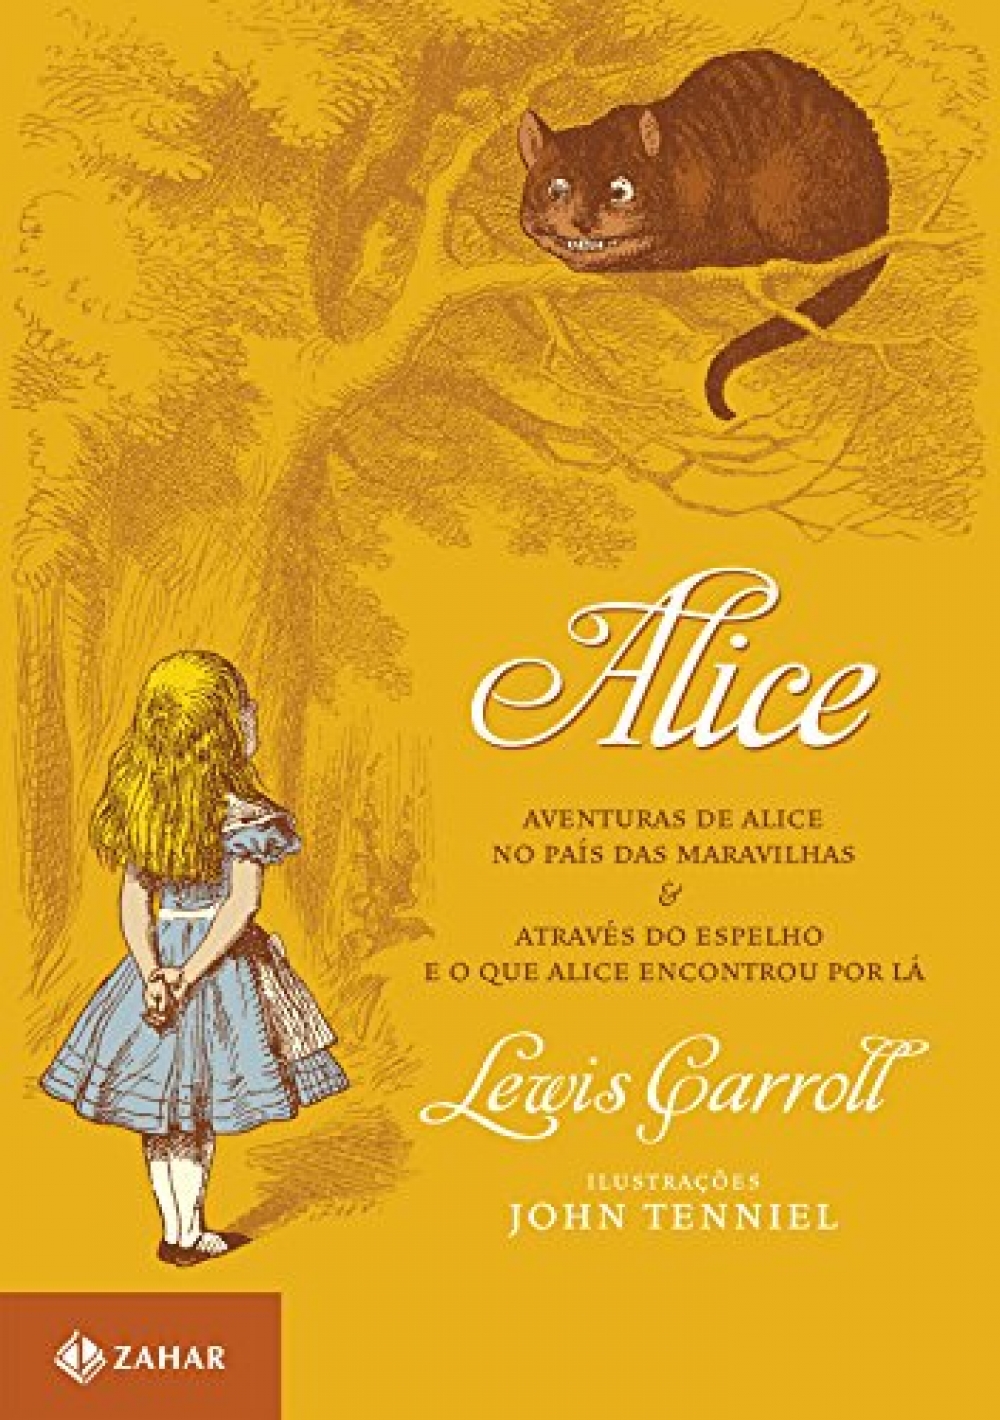 Aventuras de Alice no País das Maravilhas & Através do Espelho e o que Alice encontrou por lá